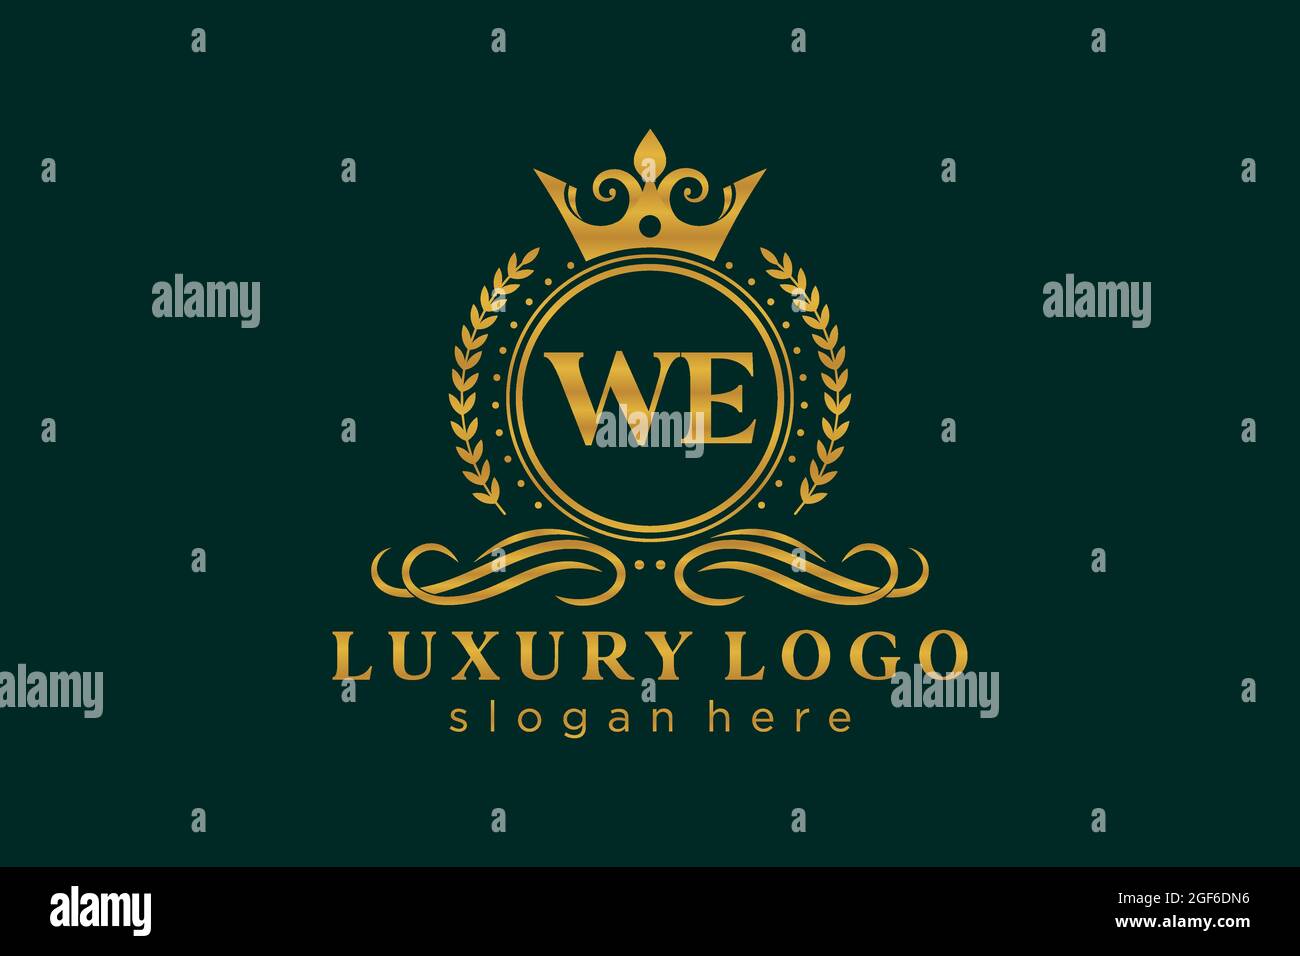 WIR schreiben Royal Luxury Logo Vorlage in Vektorgrafik für Restaurant, Royalty, Boutique, Cafe, Hotel, Heraldisch, Schmuck, Mode und andere Vektor illustrr Stock Vektor